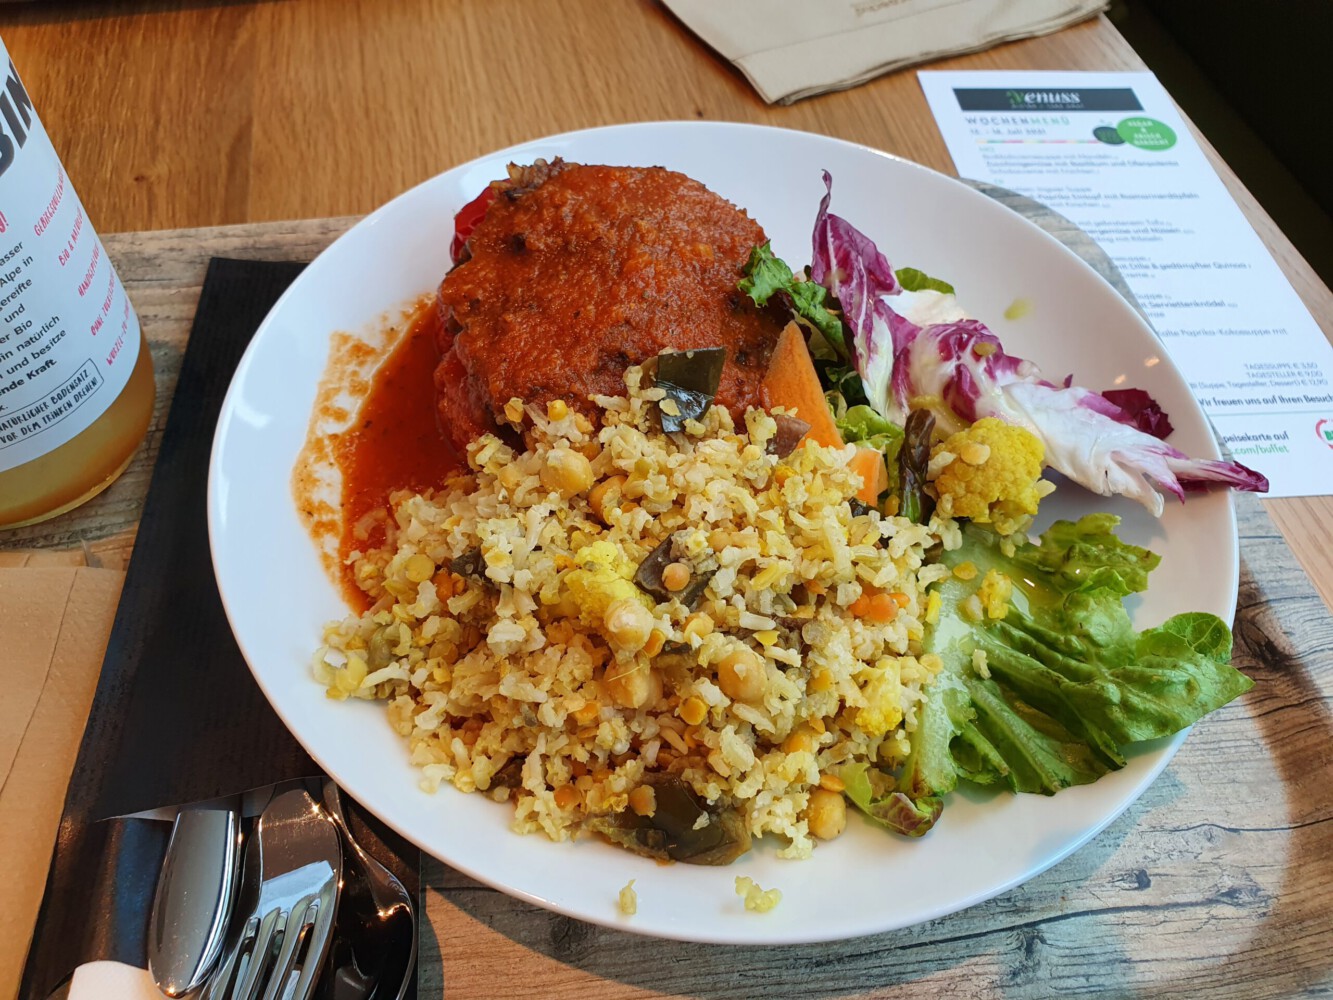 Vegan lunch at Venuss in Wien.